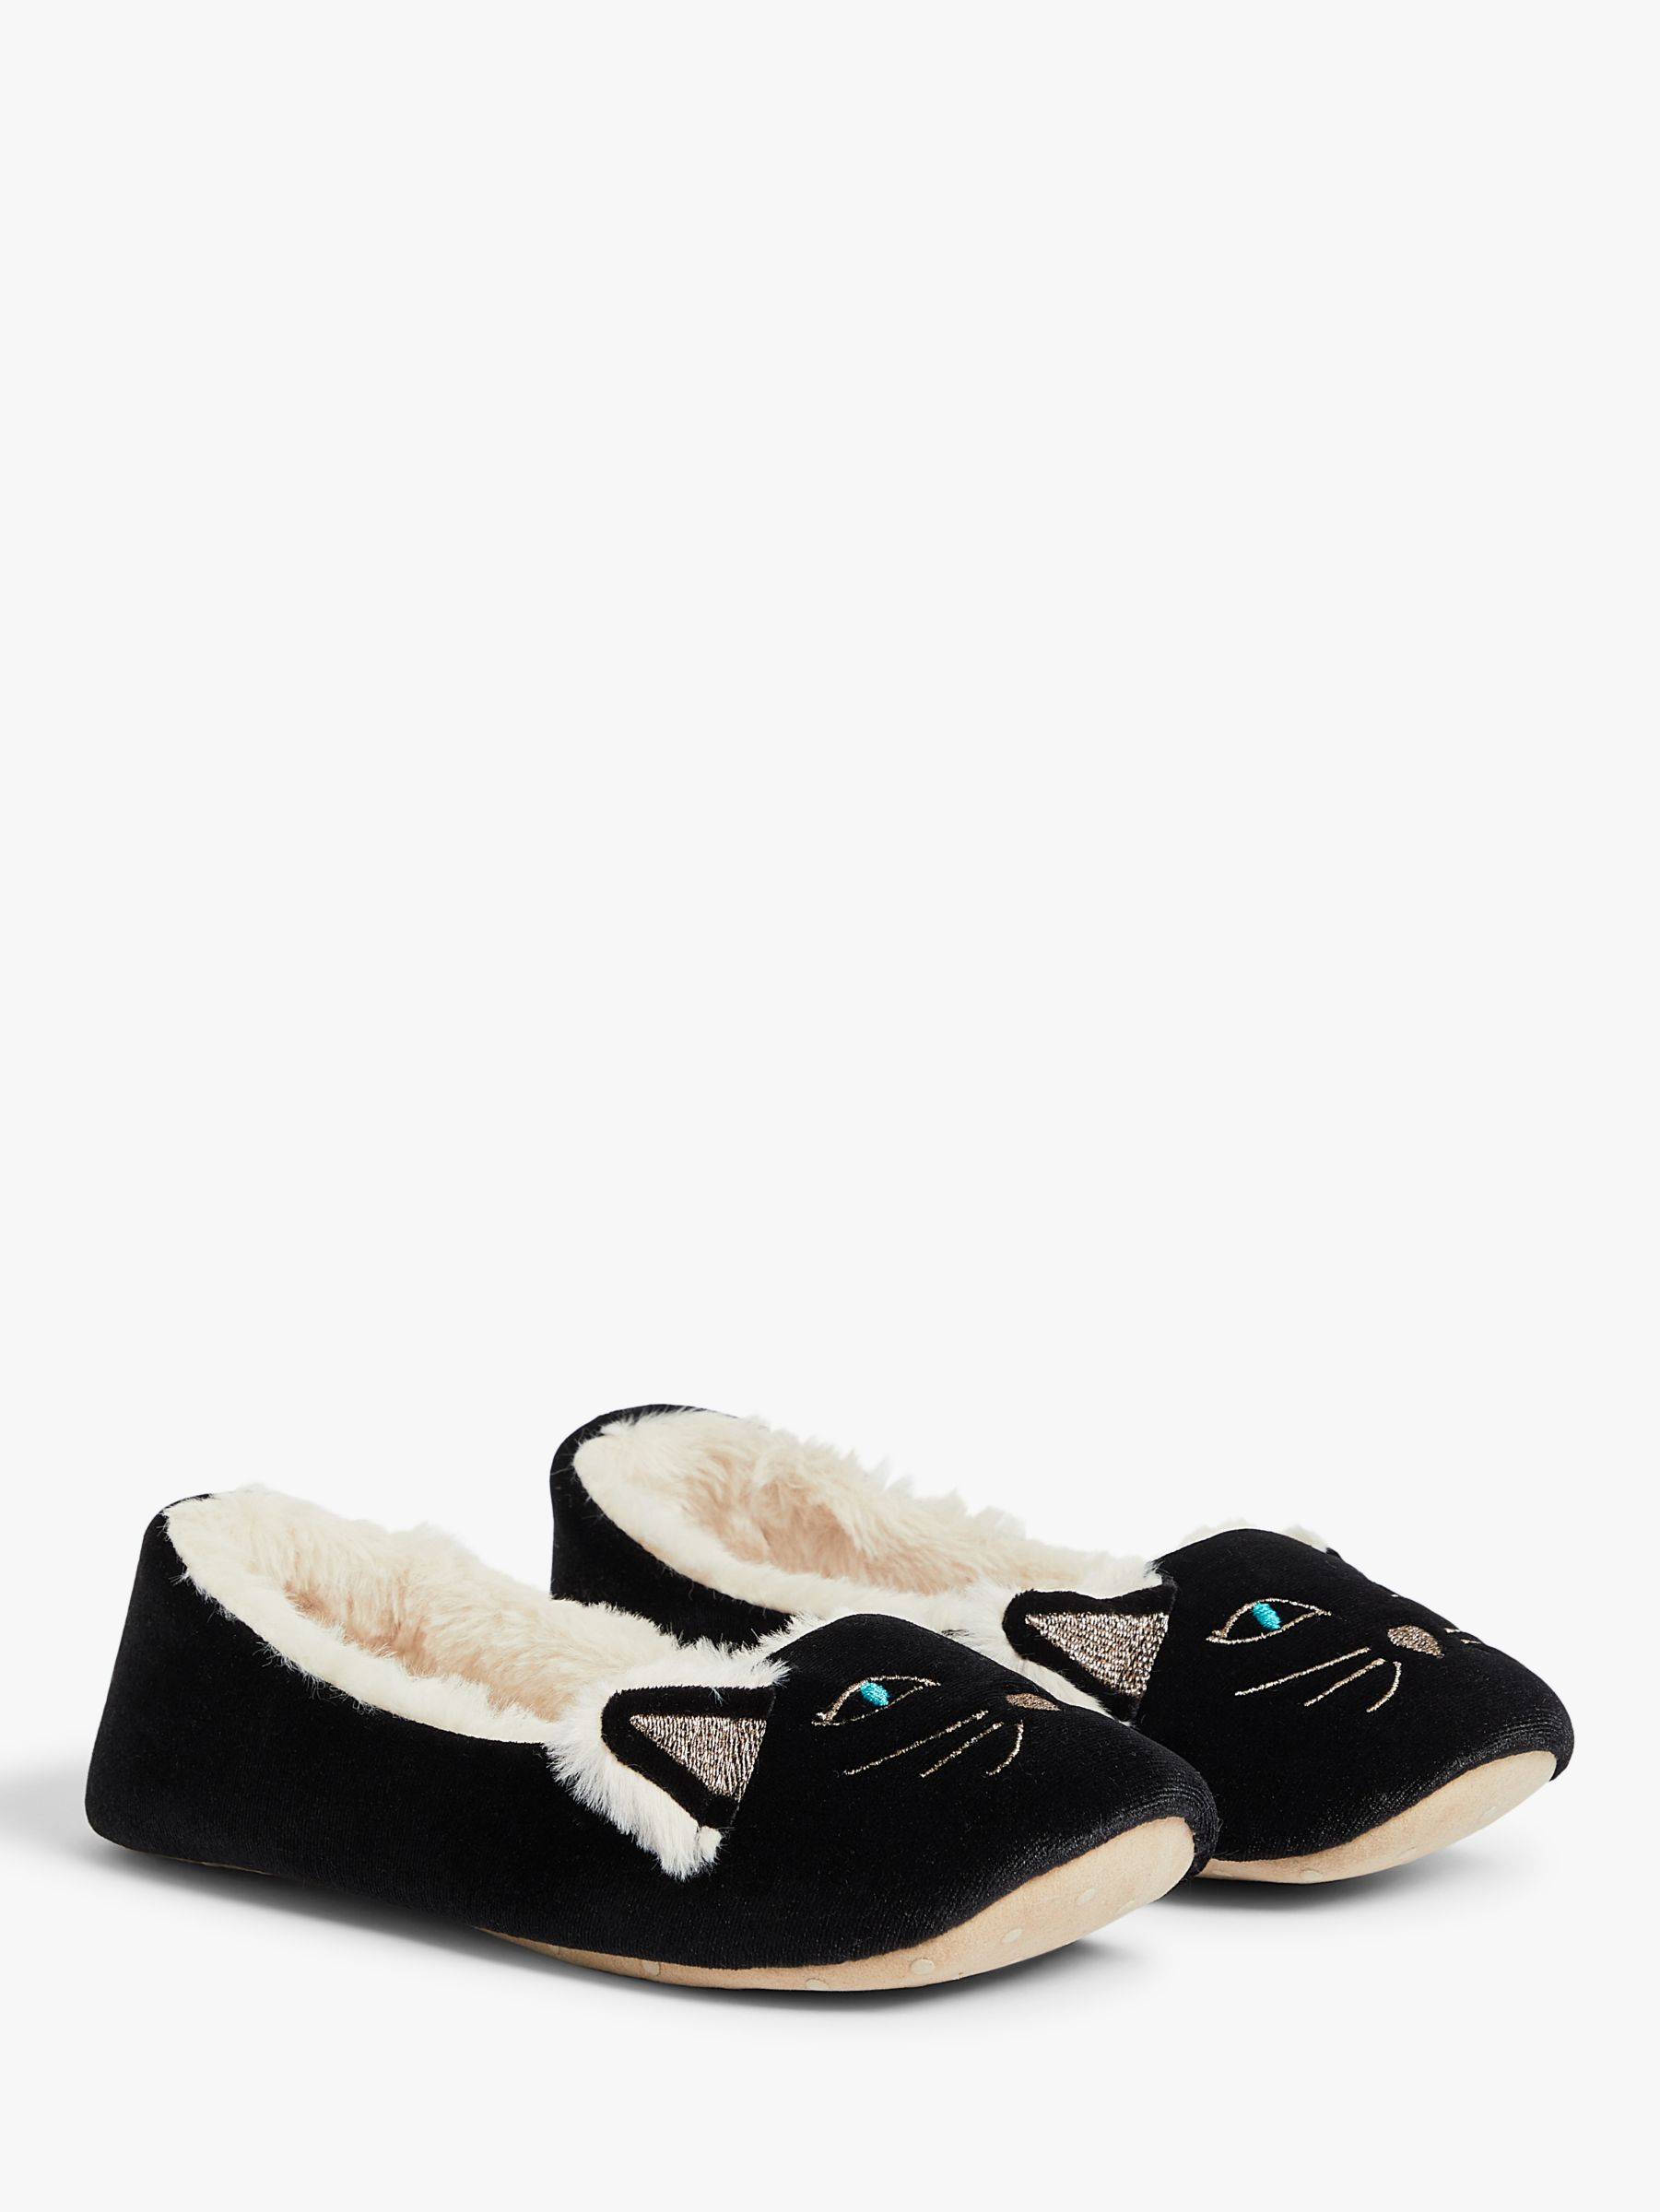 John Lewis Cat Ballerina Slippers, Black, 3